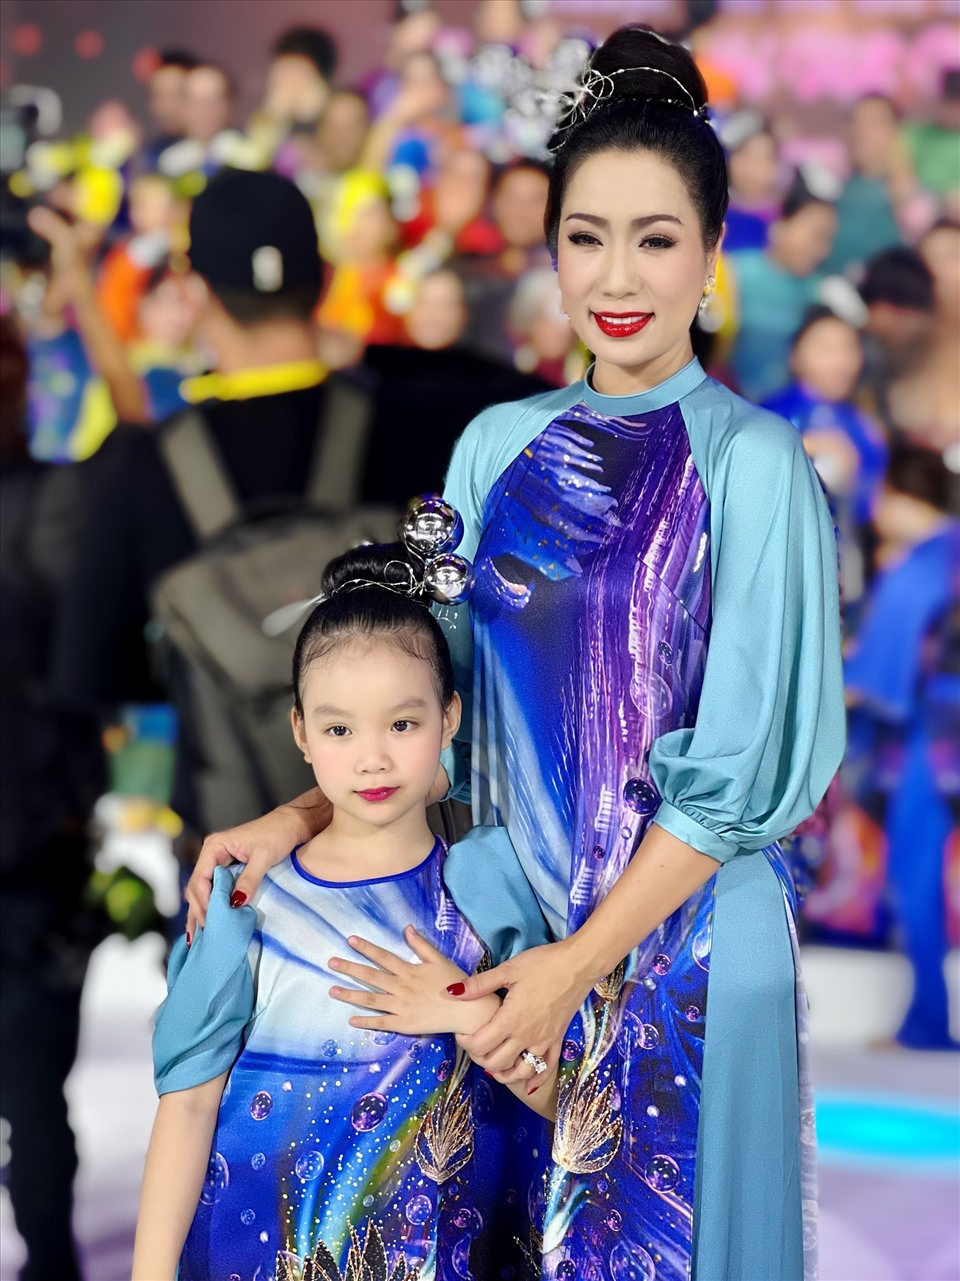 Ánh Vy con gái thứ 2 của Trịnh Kim Chi tỏ ra rất tự tin, dạn dĩ trước ống kính khi cùng mẹ sải chân từng bước uyển chuyển trên sàn diễn siêu dễ thương. Được biết đây là lần đầu tiên của công chúa nhỏ biểu diễn thời trang trên sân khấu chuyên nghiệp.